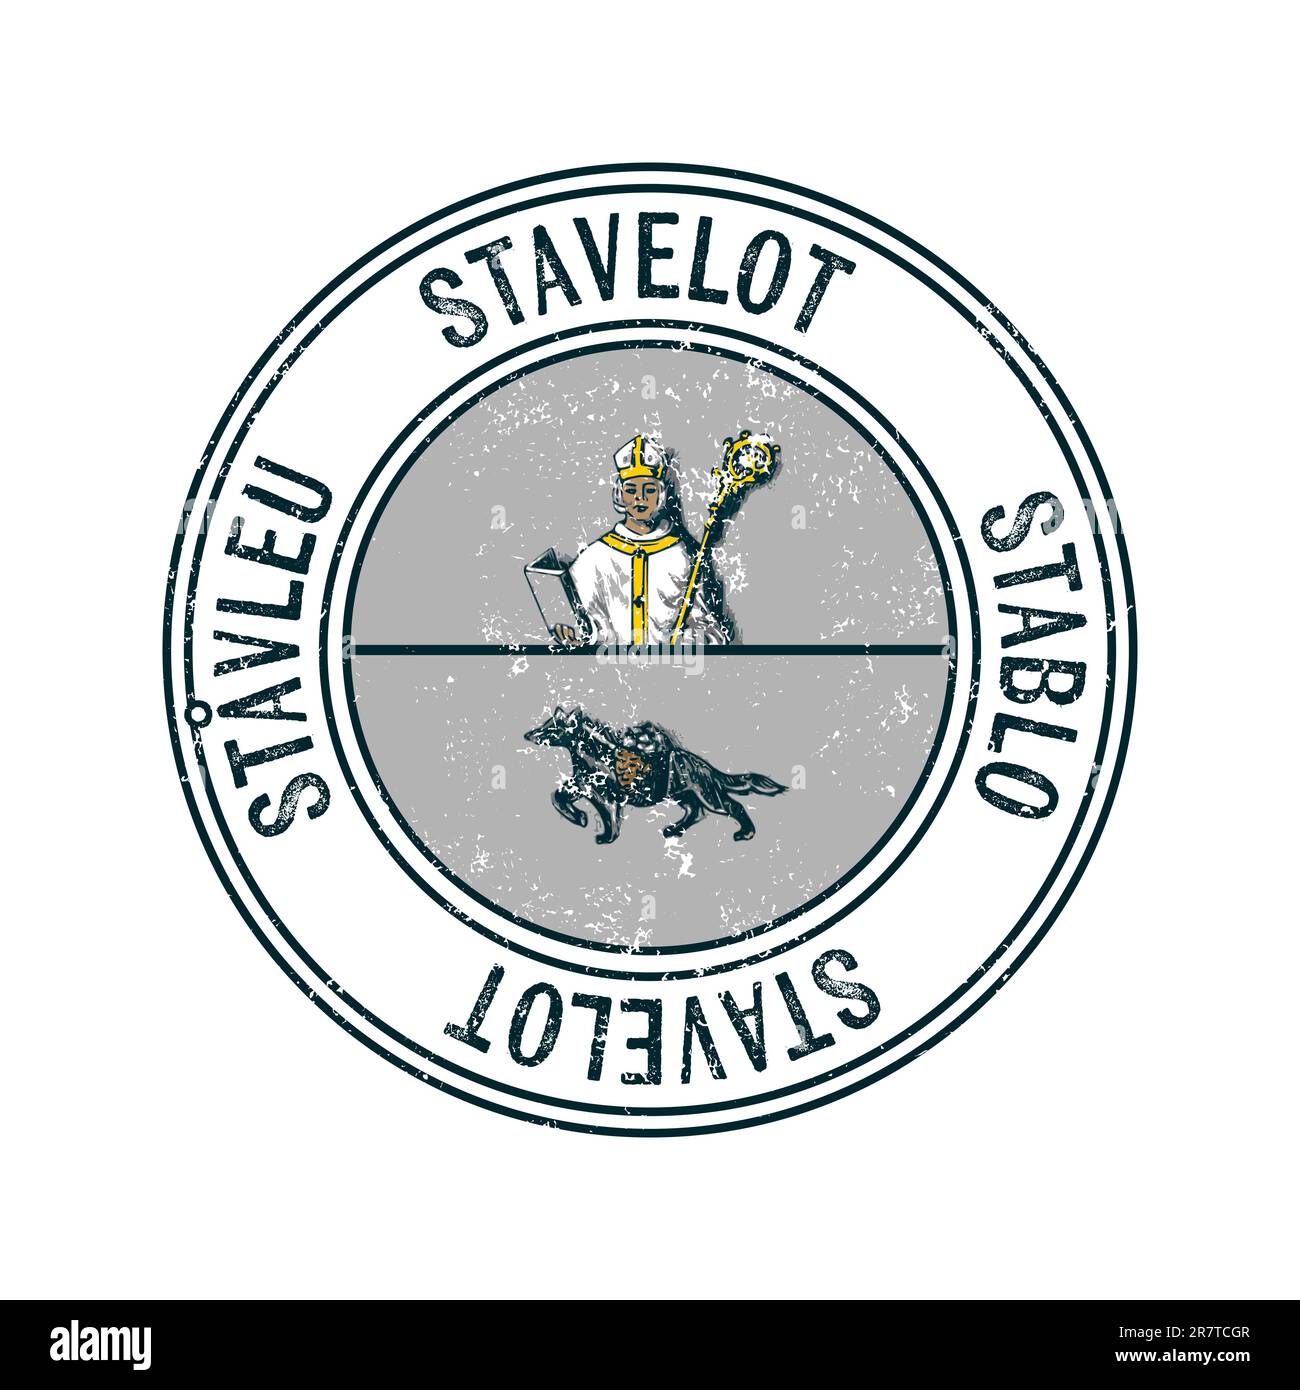 Stavelot, Belgique ville vecteur grunge tampon caoutchouc sur fond blanc Banque D'Images